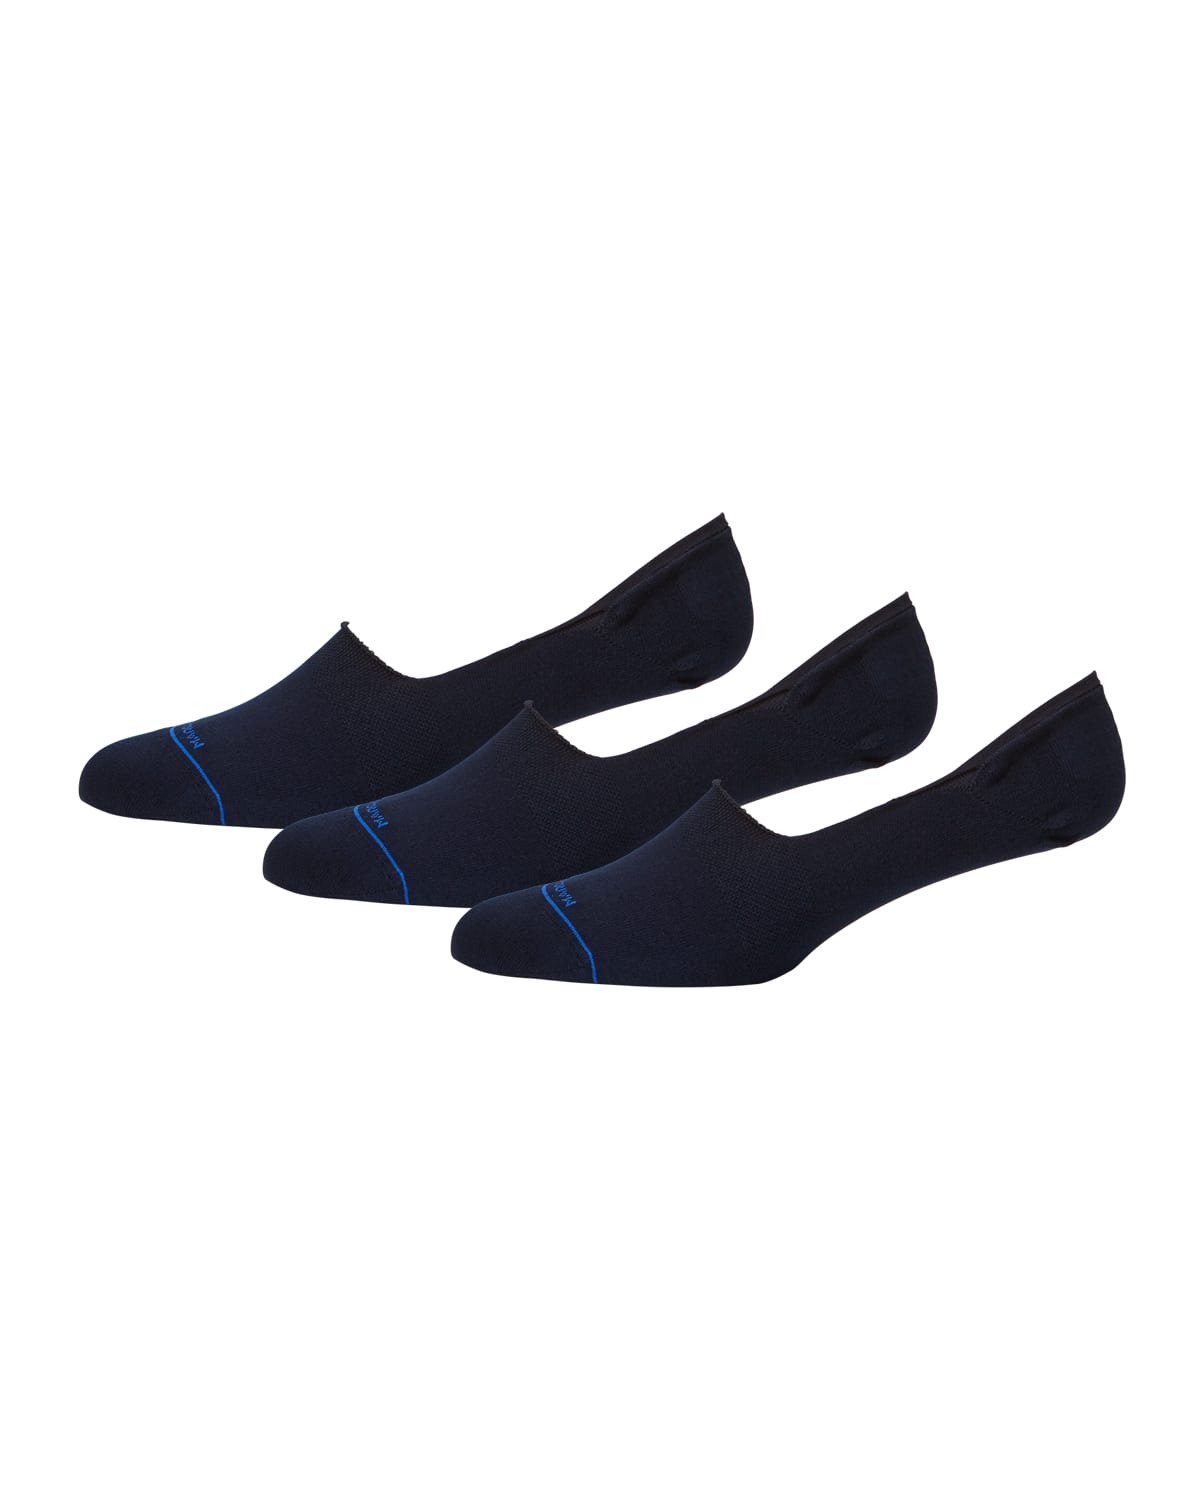 Marcoliani Men's Invisible 3-pack No-show Cotton Socks In Black